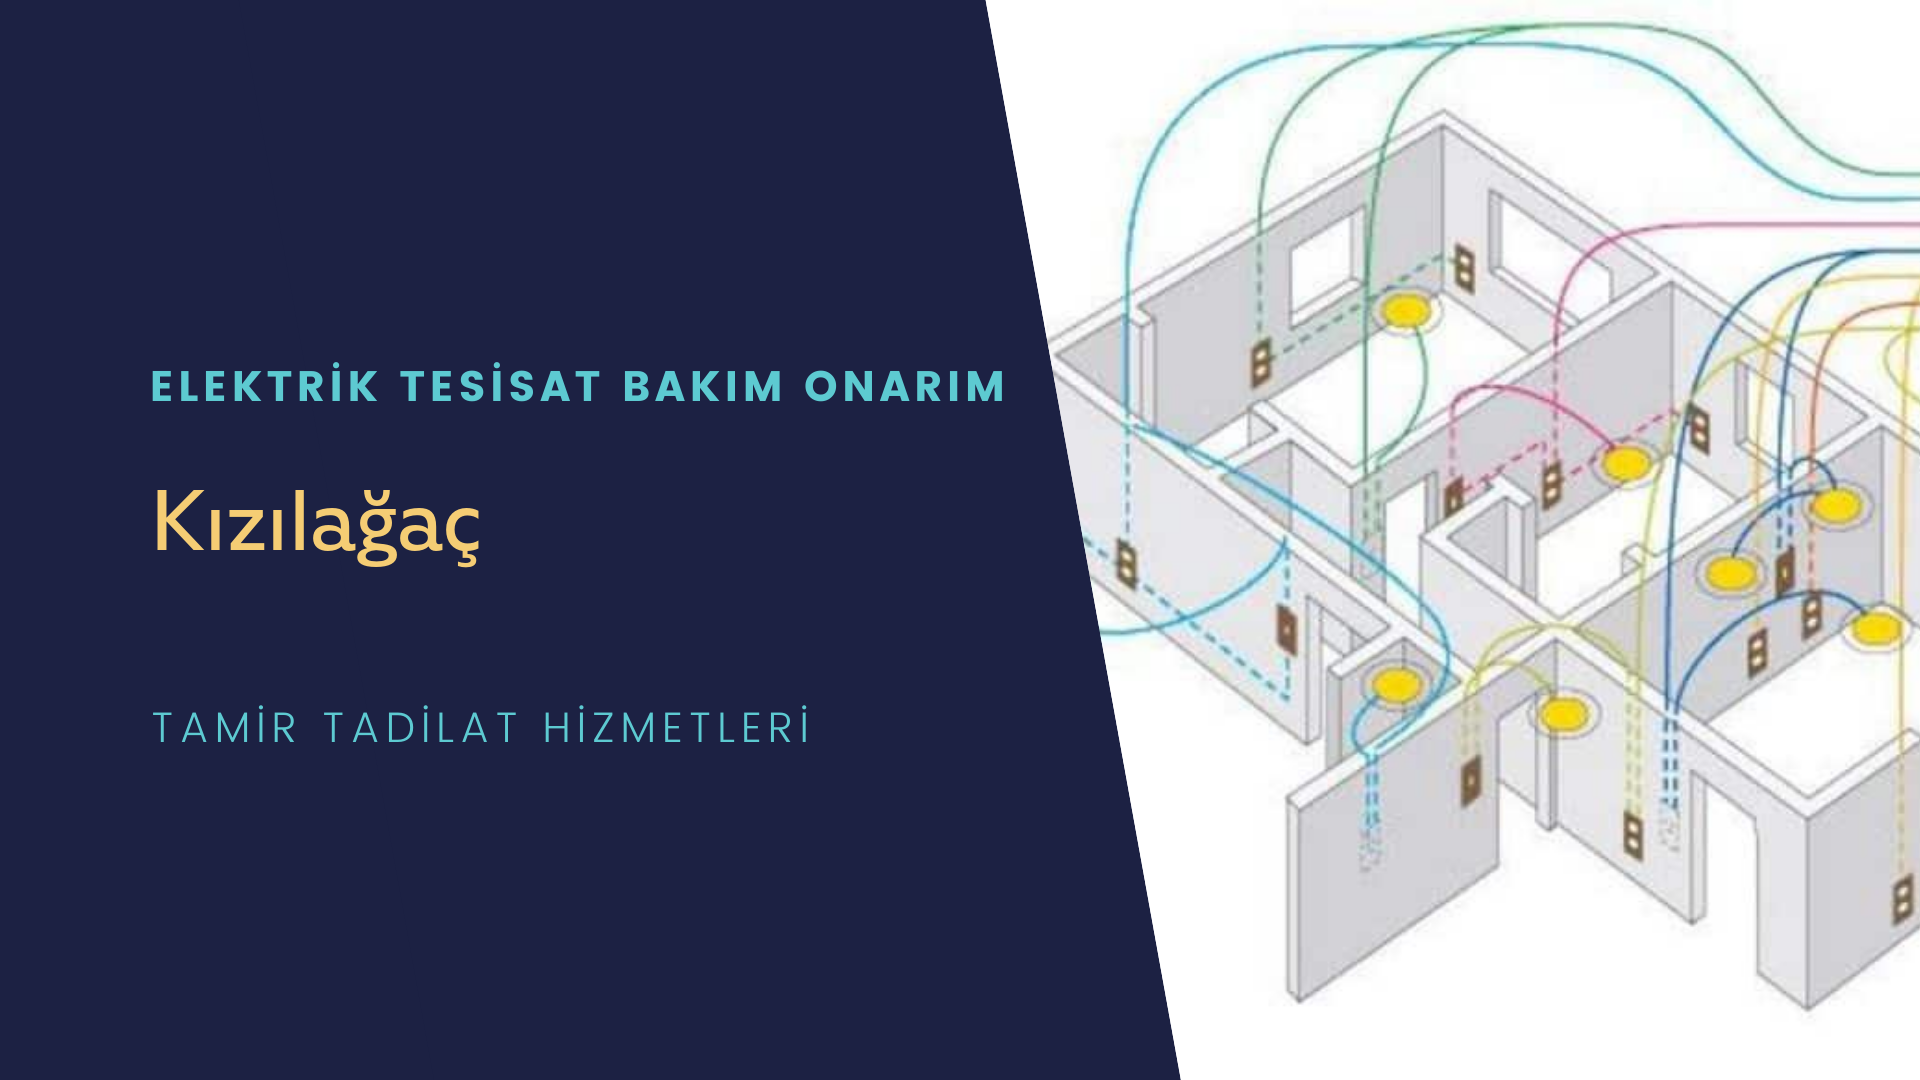 Kızılağaç'ta elektrik tesisatı ustalarımı arıyorsunuz doğru adrestenizi Kızılağaç elektrik tesisatı ustalarımız 7/24 sizlere hizmet vermekten mutluluk duyar.